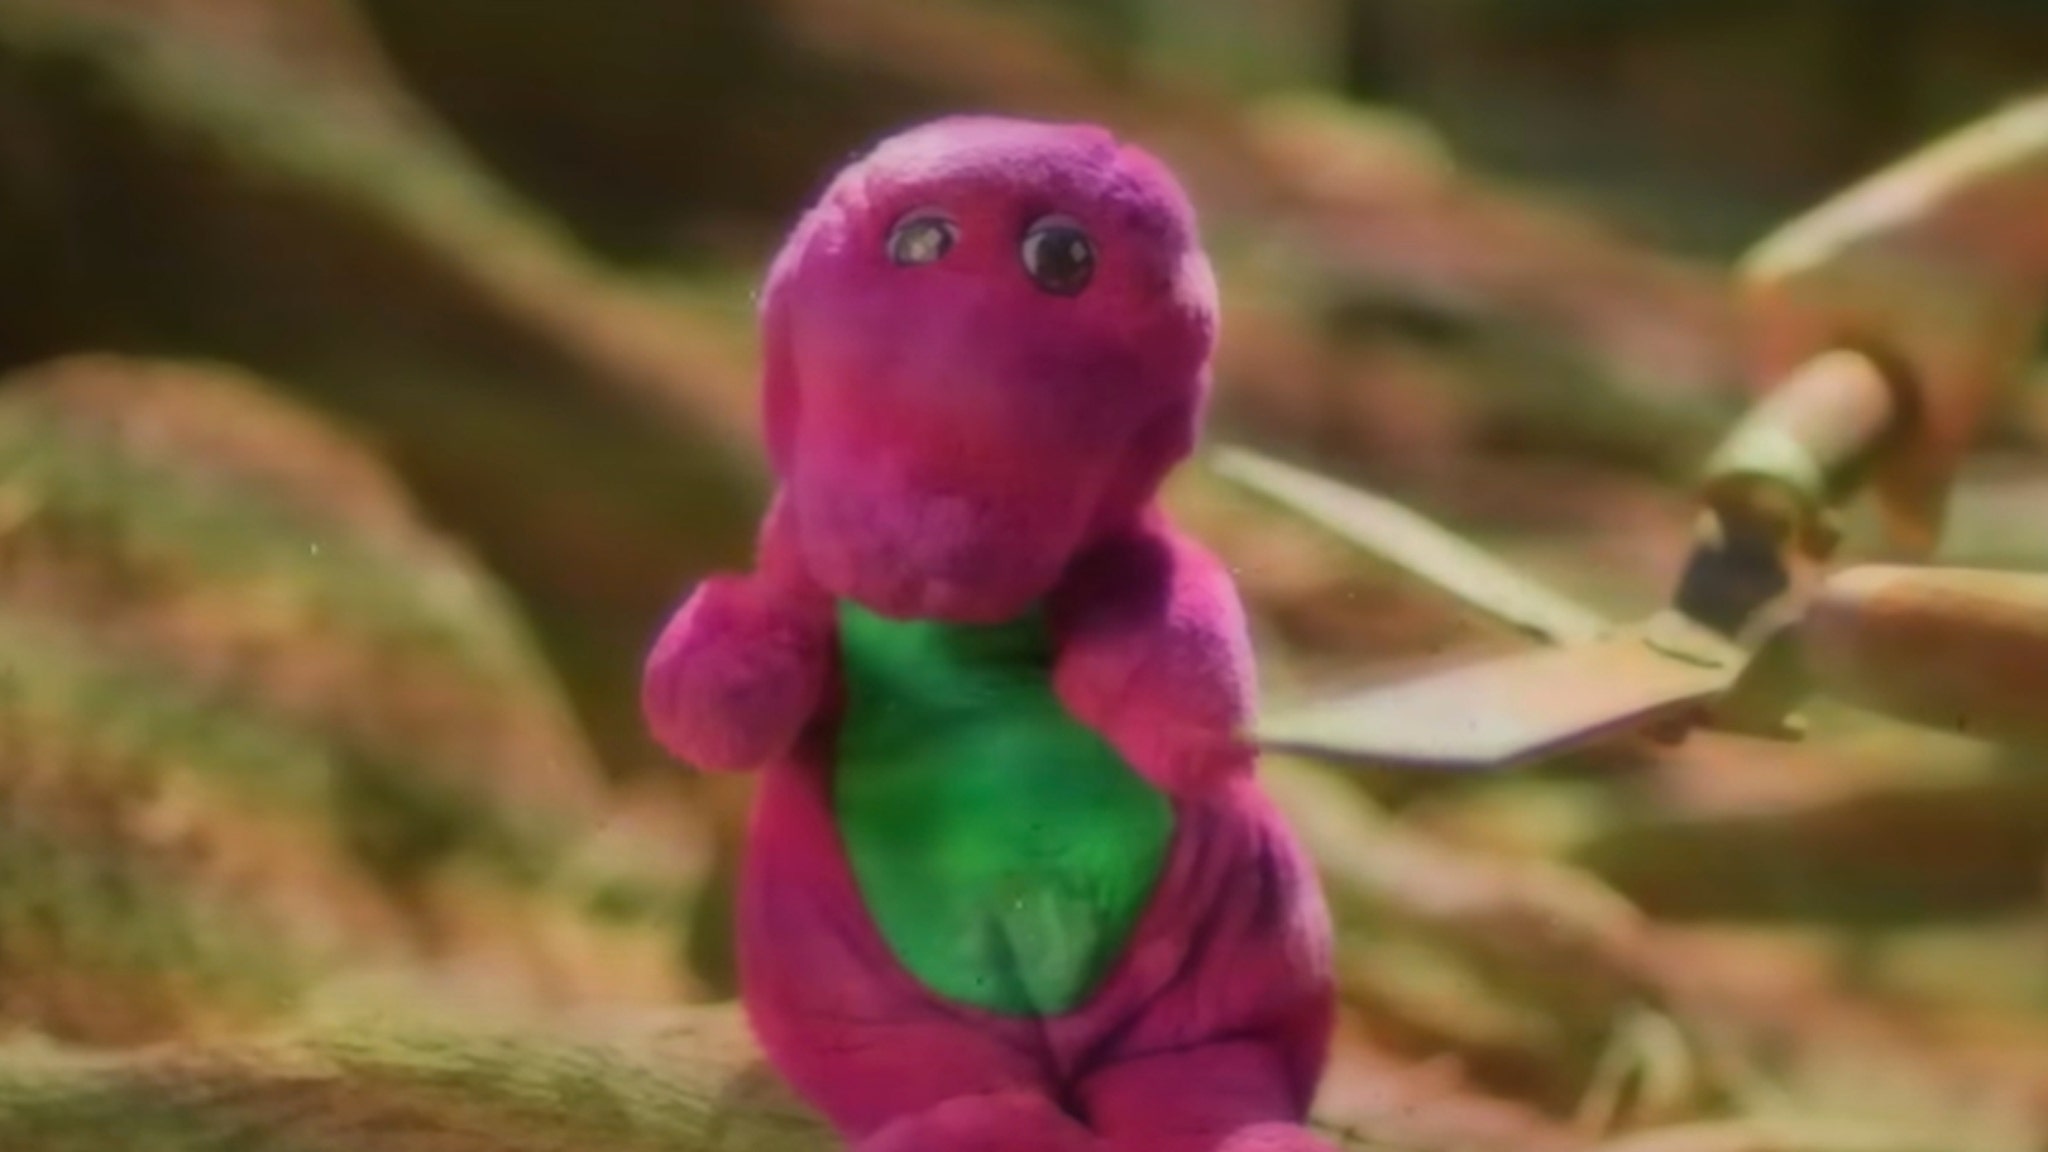 Barney Children’s Show Dark Side Exposed in New Documentary